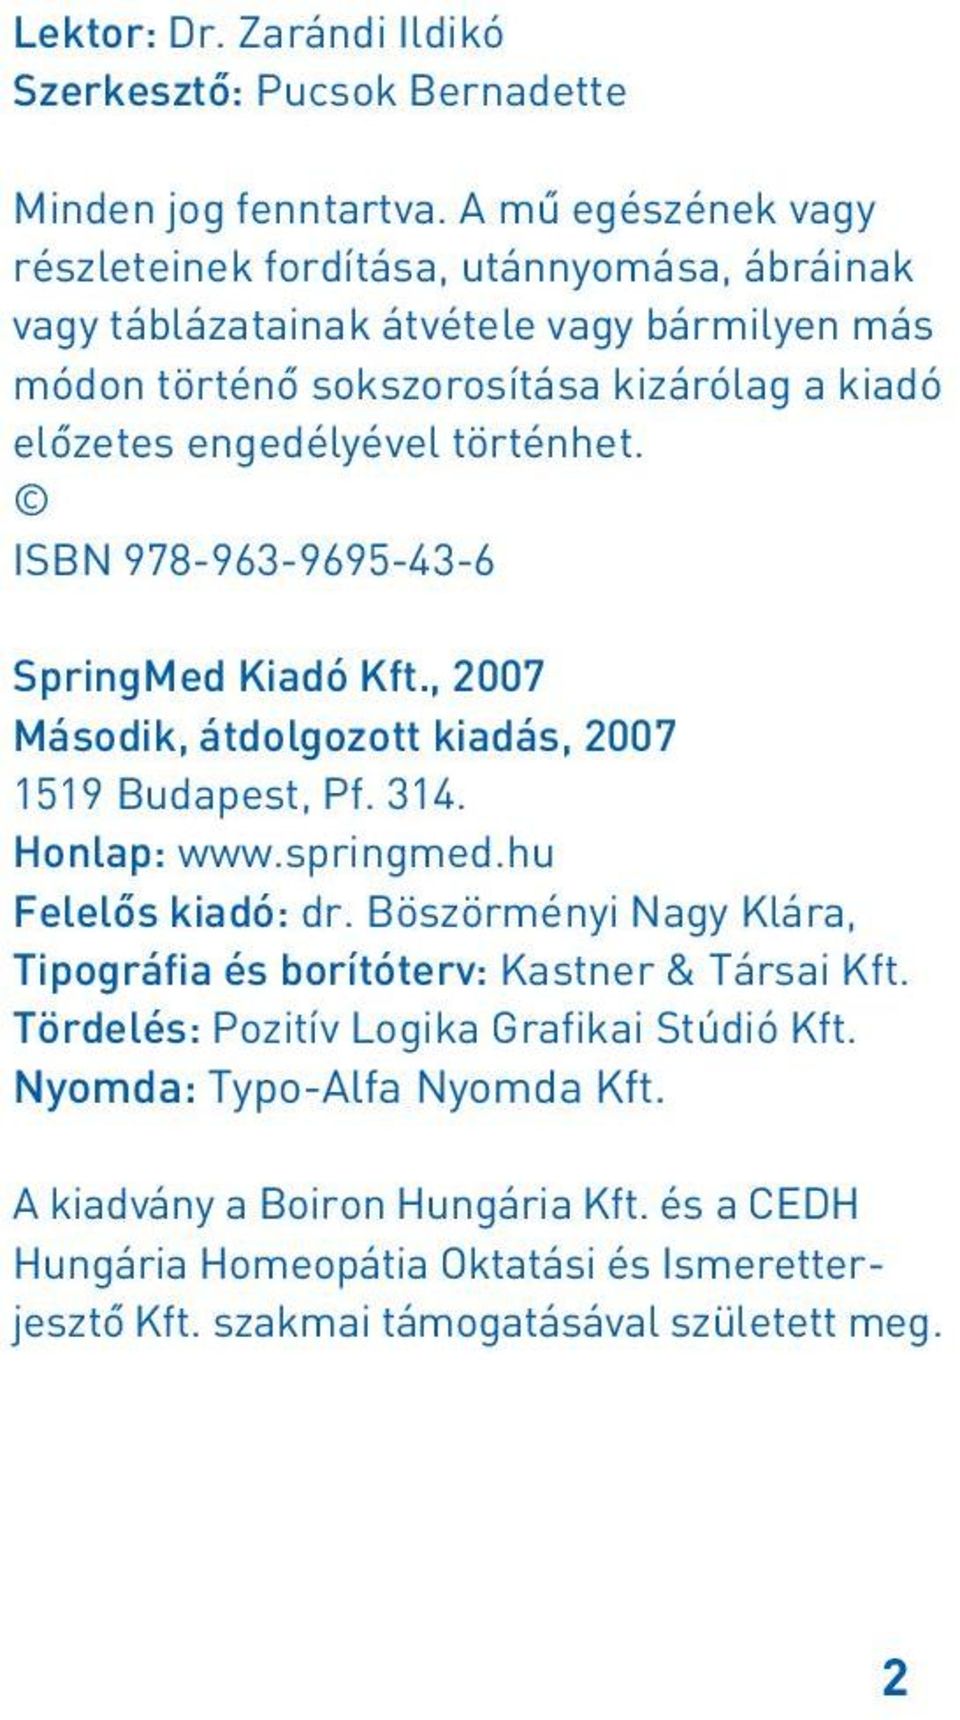 engedélyével történhet. ISBN 978-963-9695-43-6 SpringMed Kiadó Kft., 2007 Második, átdolgozott kiadás, 2007 1519 Budapest, Pf. 314. Honlap: www.springmed.hu Felelôs kiadó: dr.